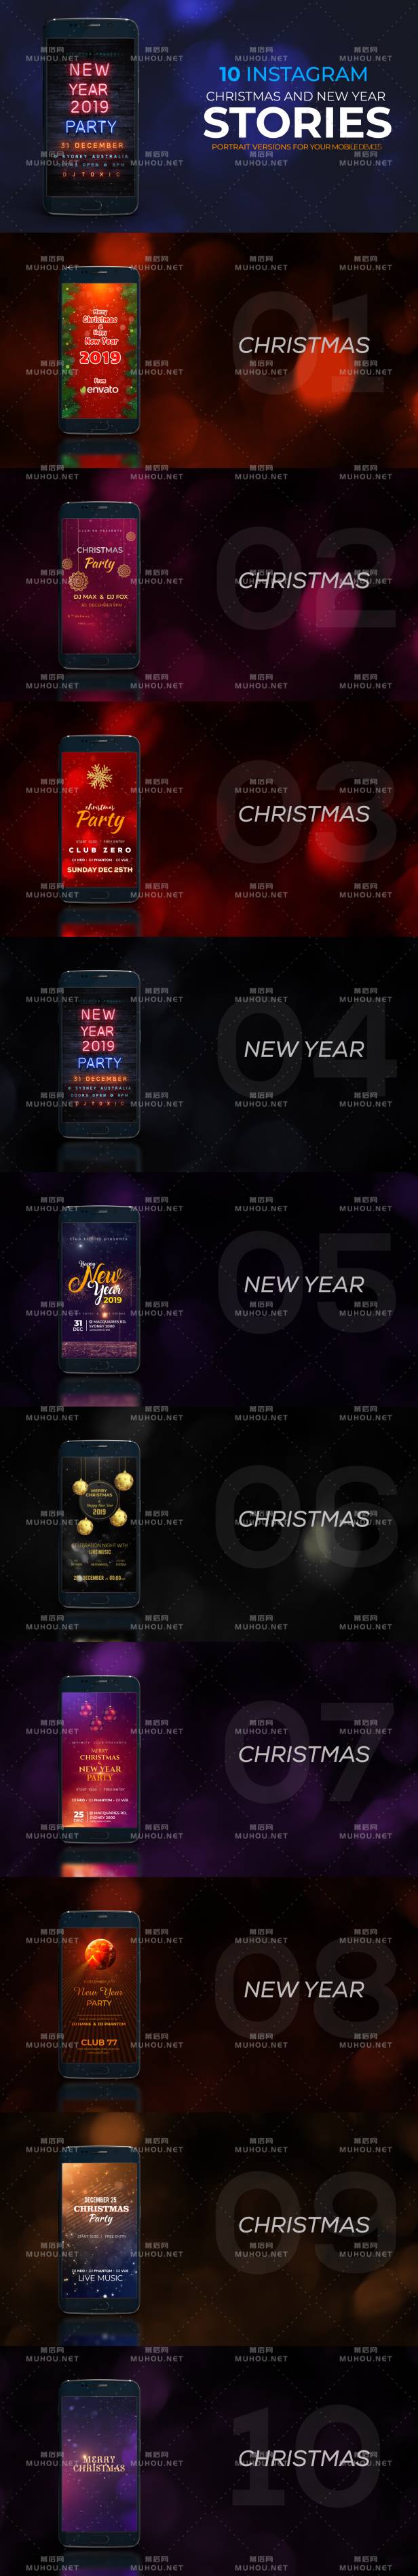 圣诞节/新年祝福Instagram故事视频AE模板插图